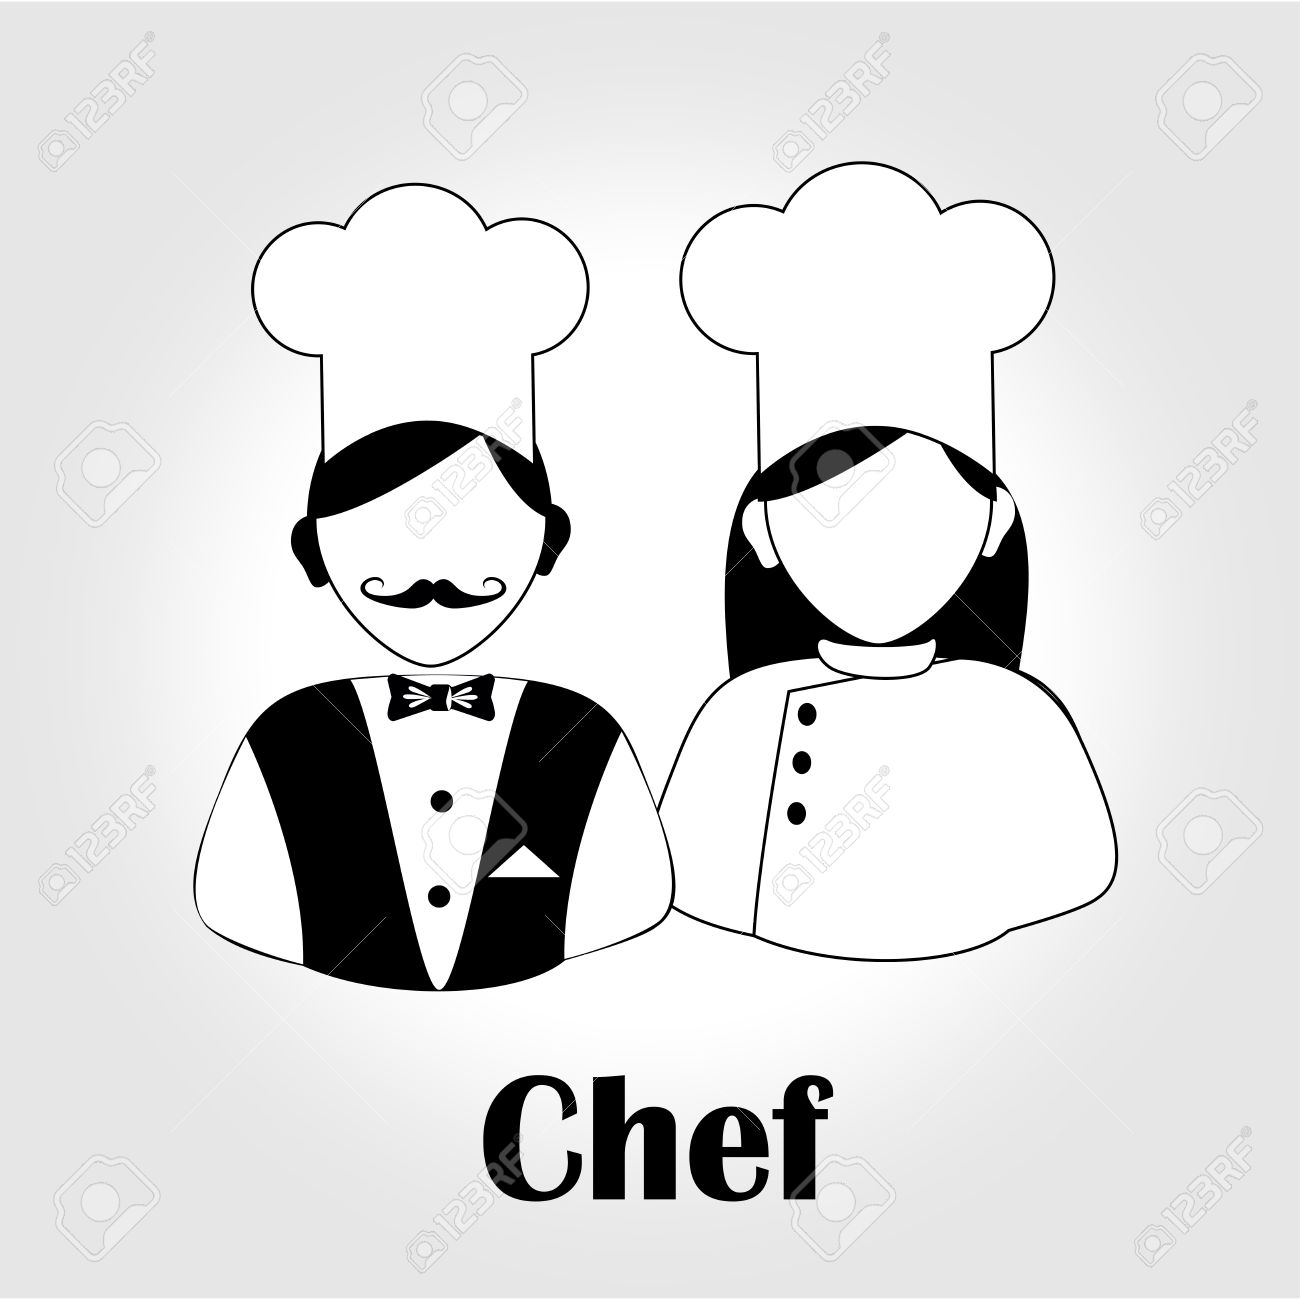 Chef hat - Free fashion icons